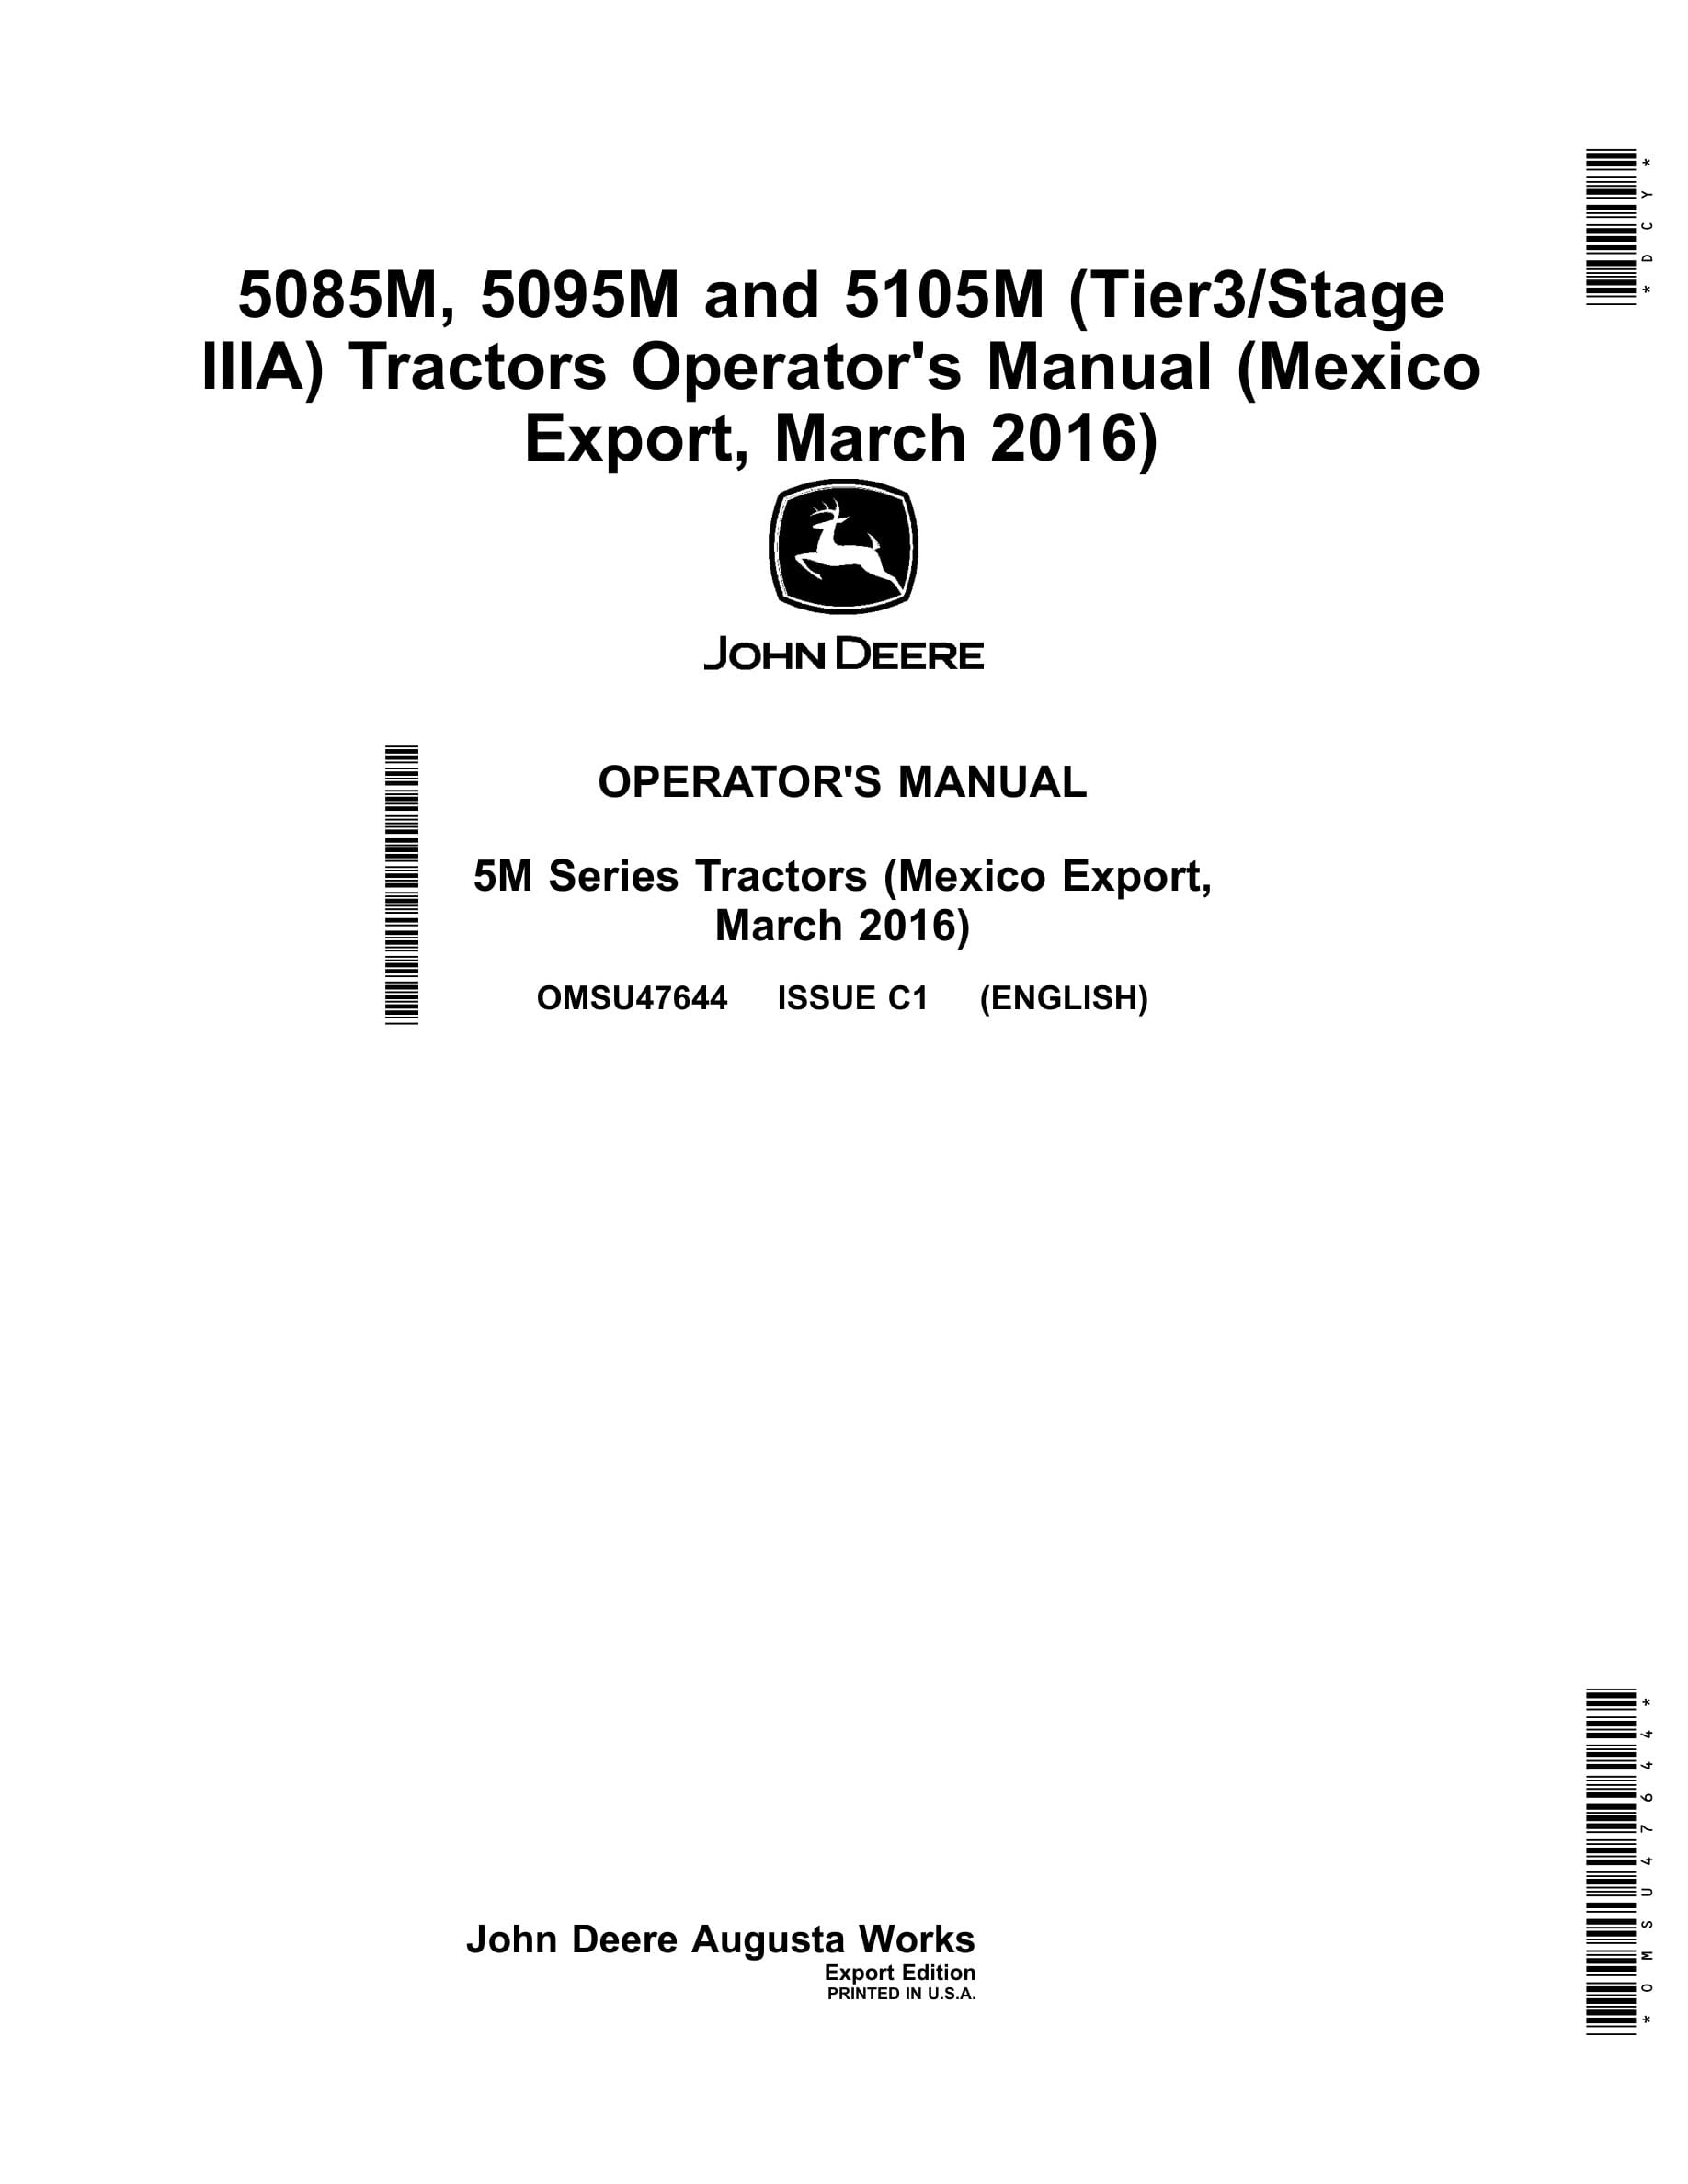 John Deere 5085m, 5095m And 5105m (tier3 Stage Iiia) Tractors Operator Manuals OMSU47644-1